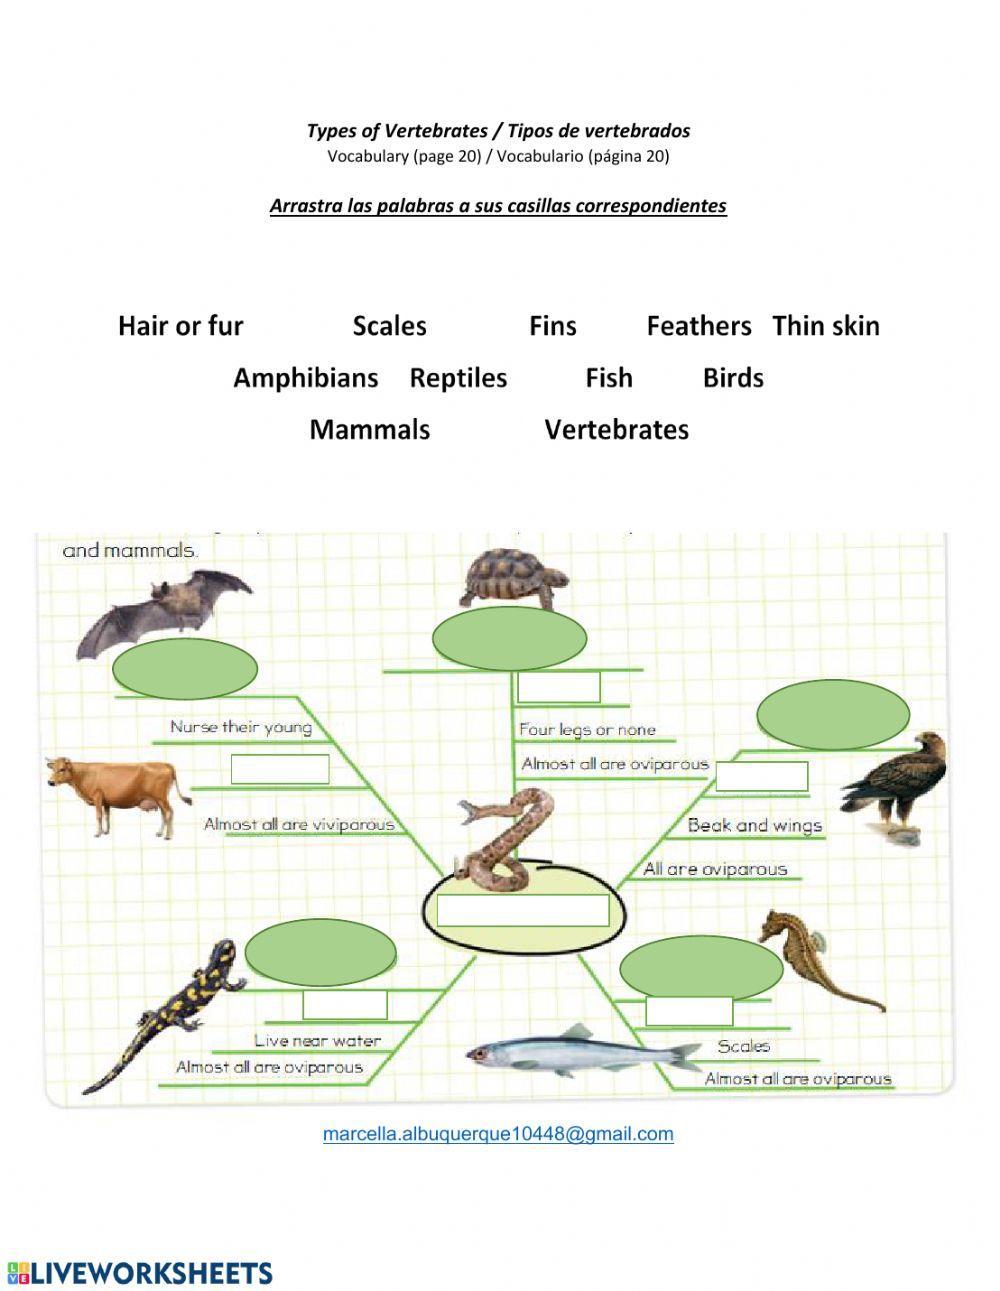 Types of vertebrates